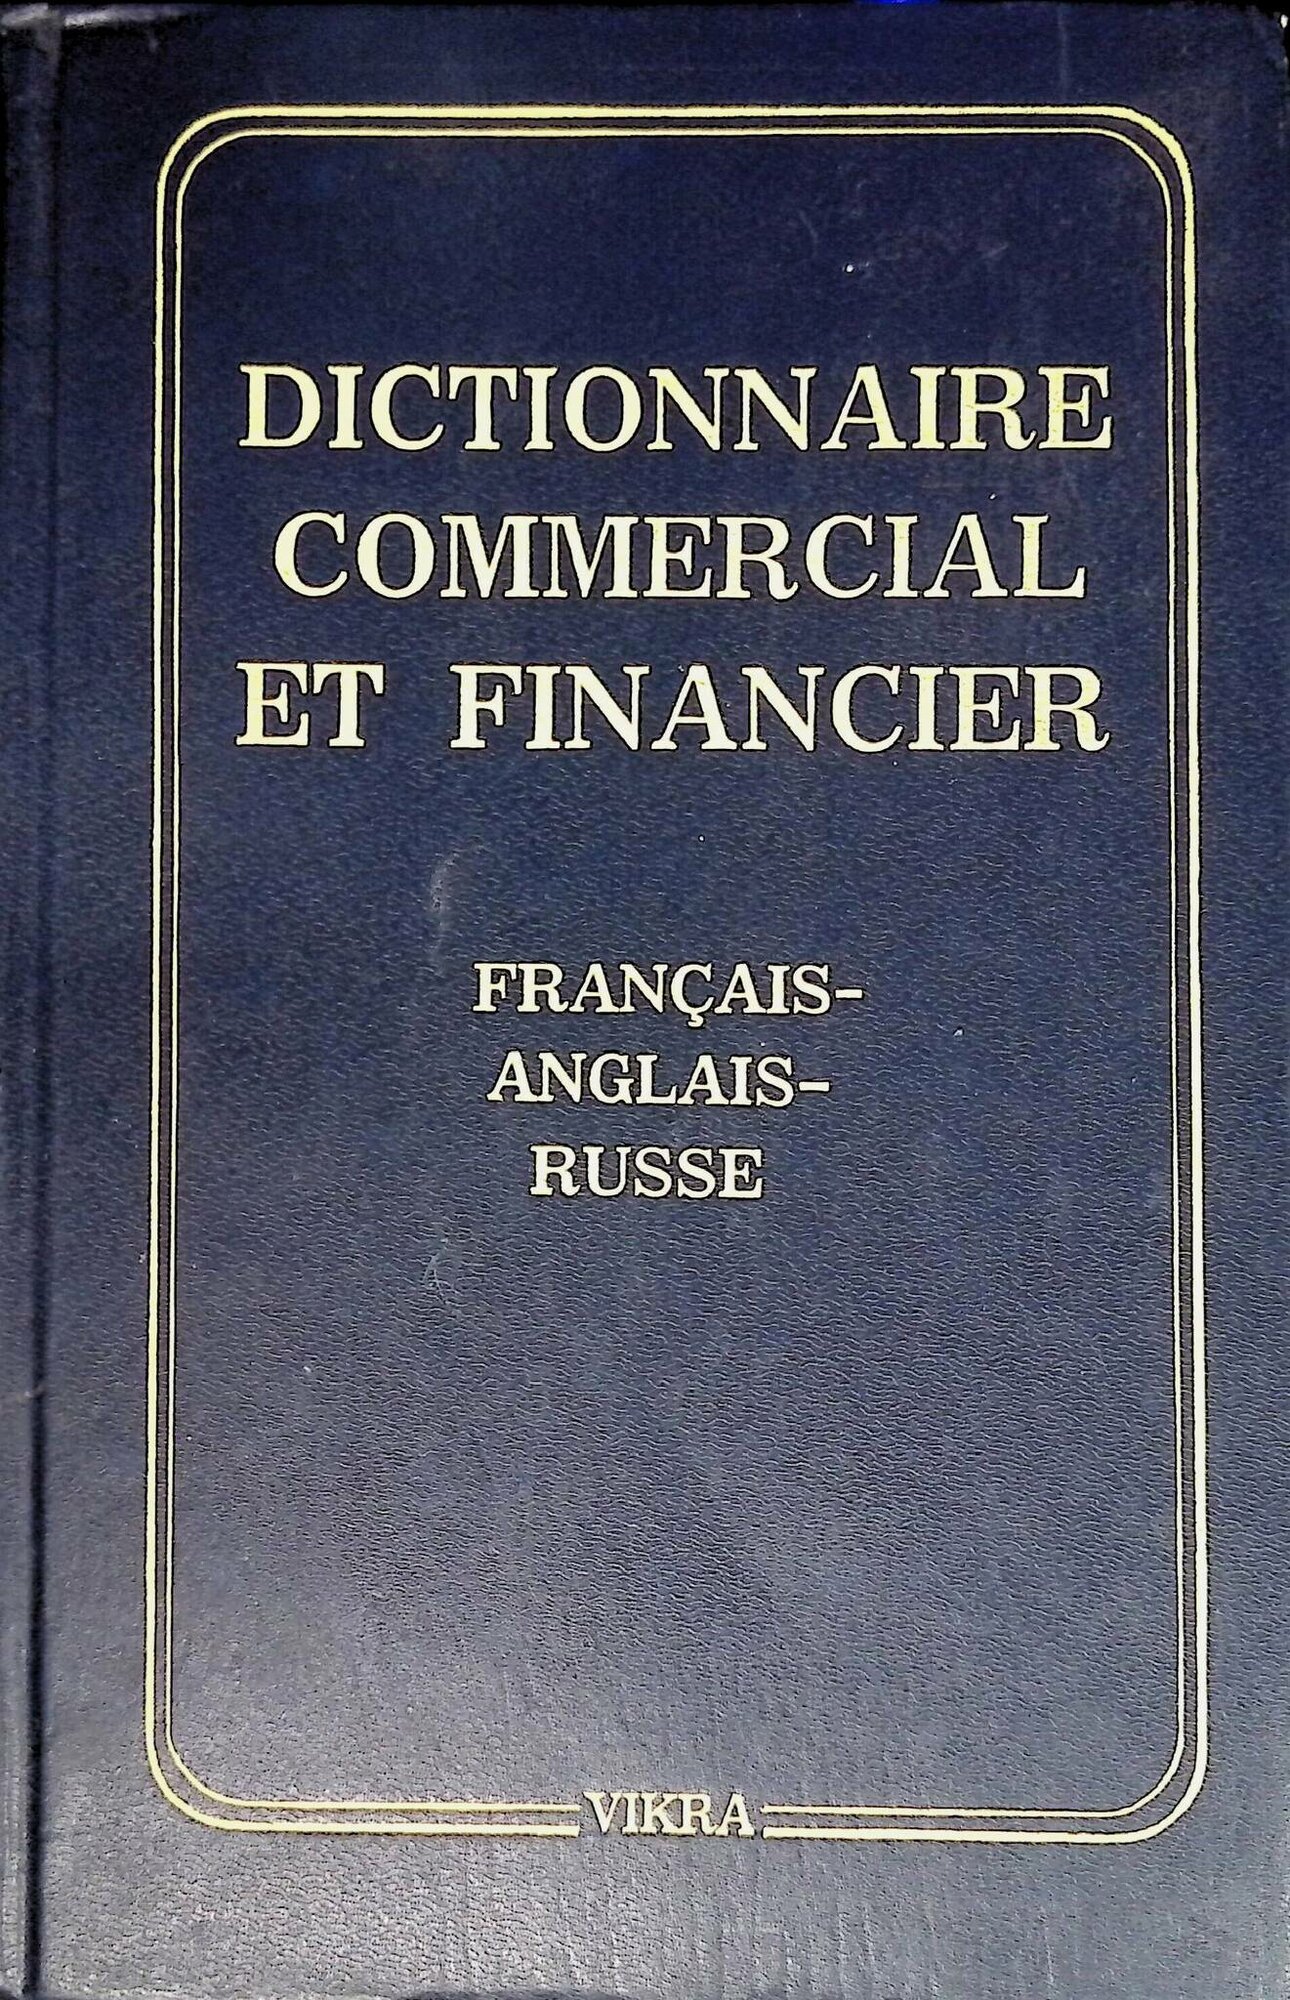 Dictionnaire commercial et financier: Francais-anglais-russe / Торгово-финансовый словарь. Французско-англо-русский